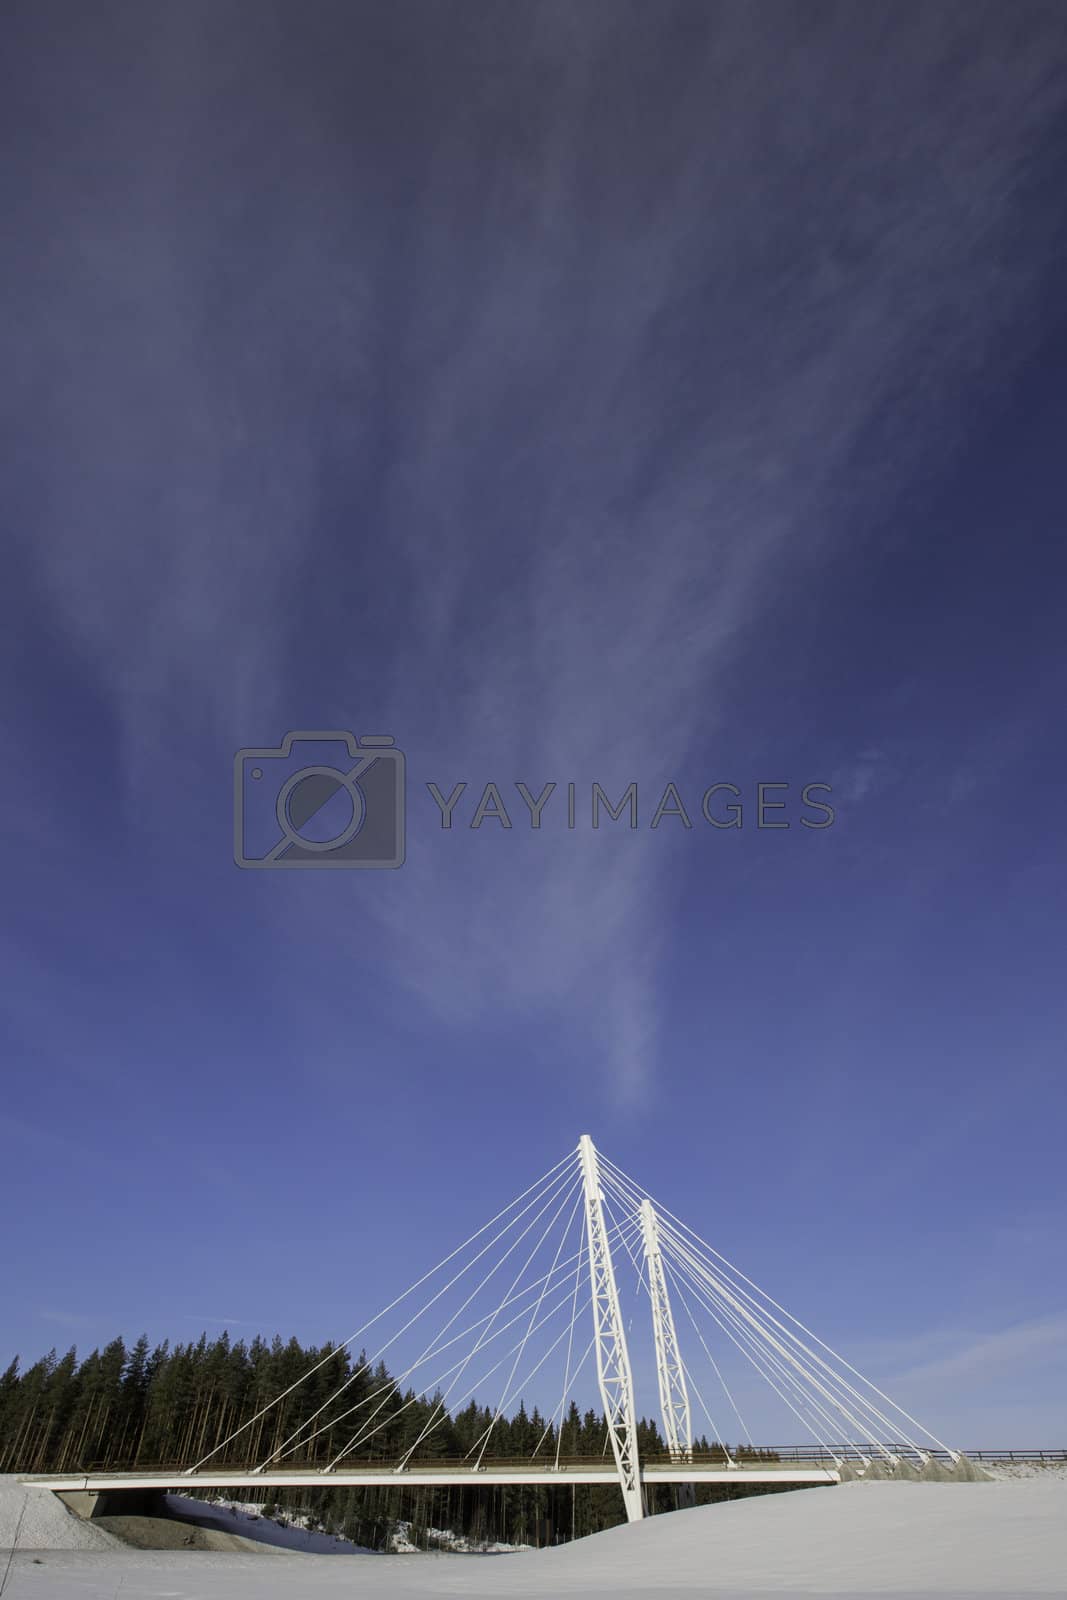 Royalty free image of Kolomoen Bridge, Norway by Milert